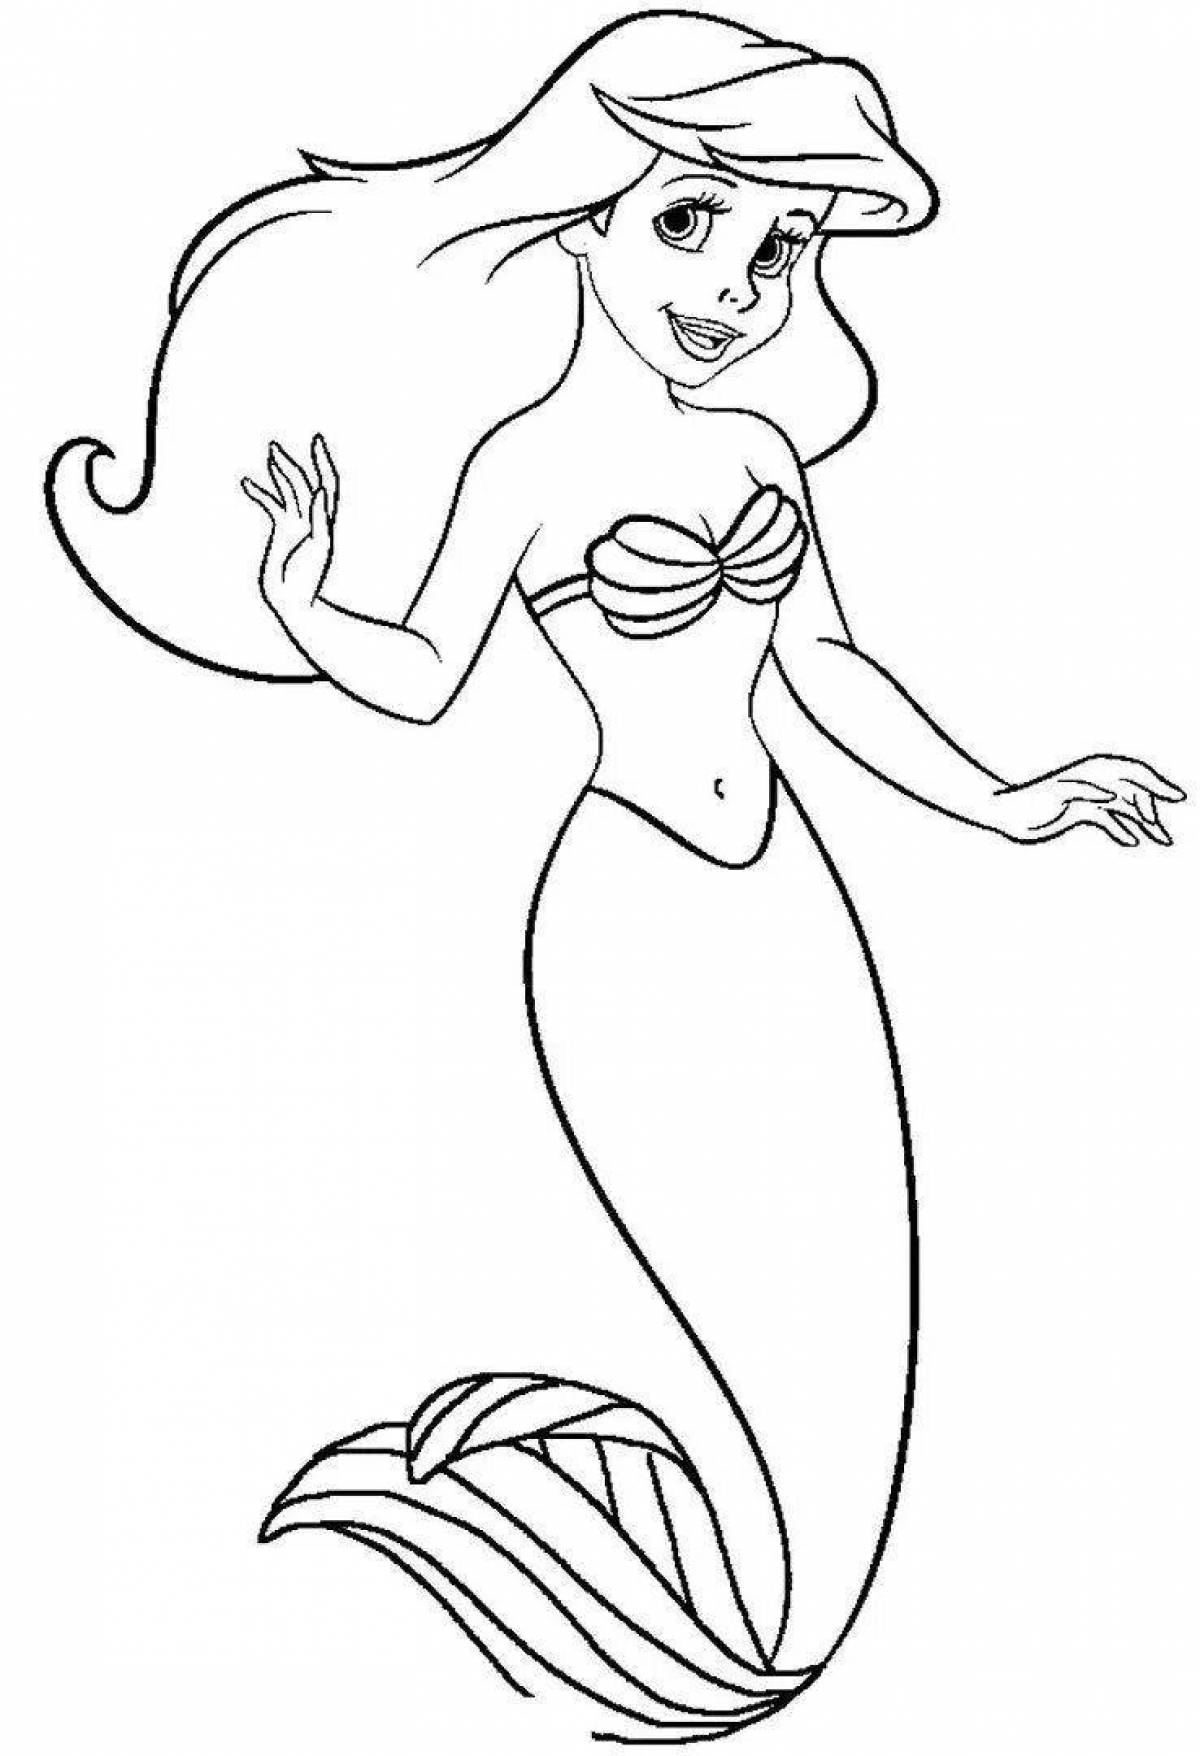 Dazzling mermaid princess coloring book